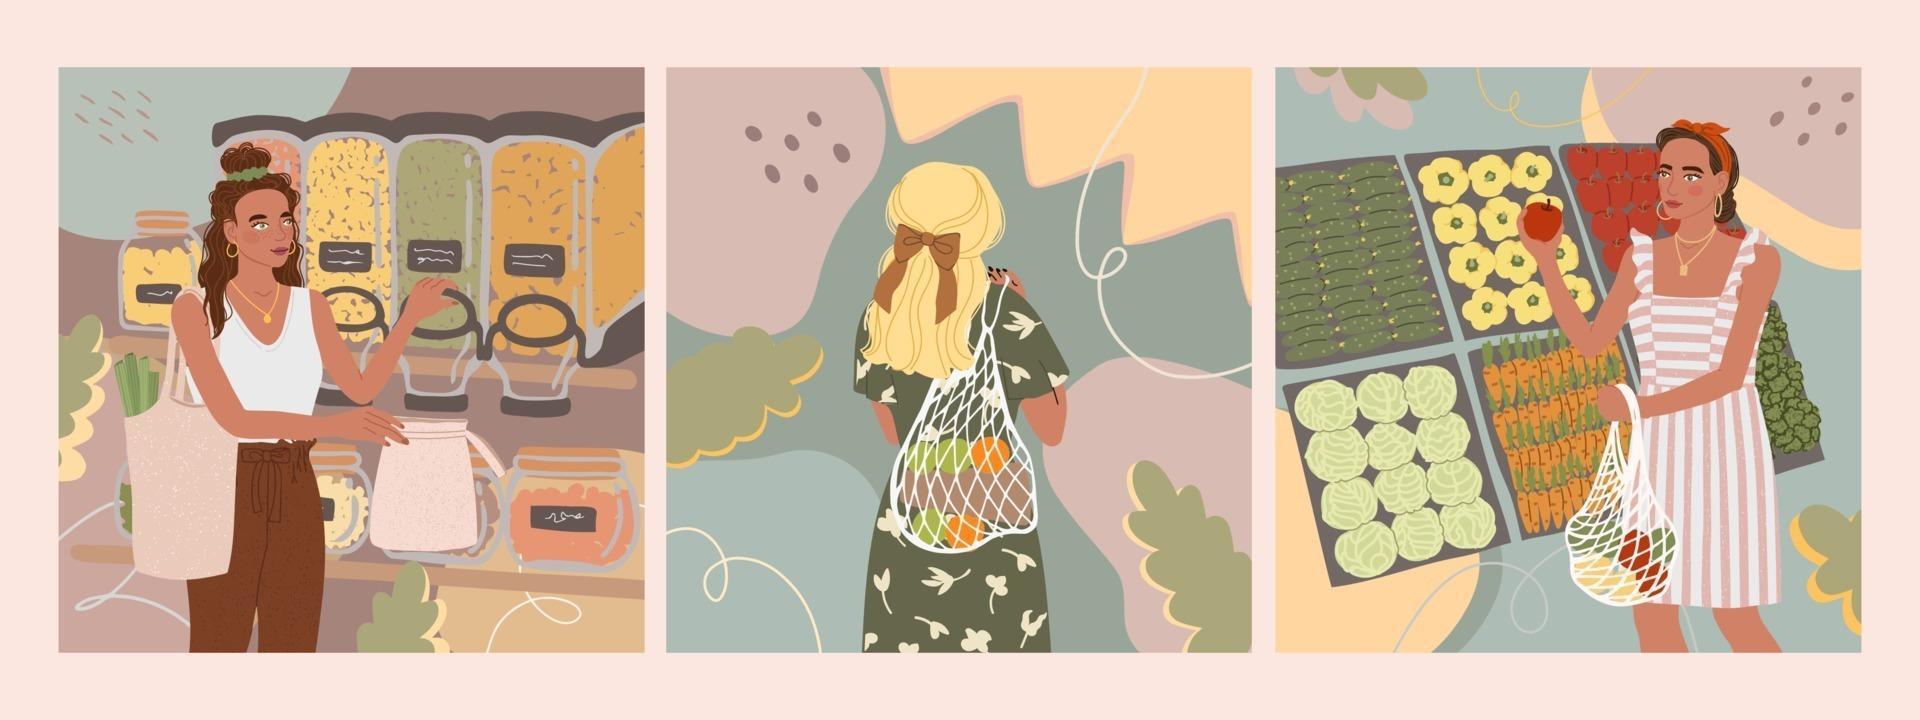 Vector conjunto colorido com ilustrações de linda jovem com saco eco comprar comida na loja ou no mercado, na moda vestida em fundos abstratos. conceito de desperdício zero.